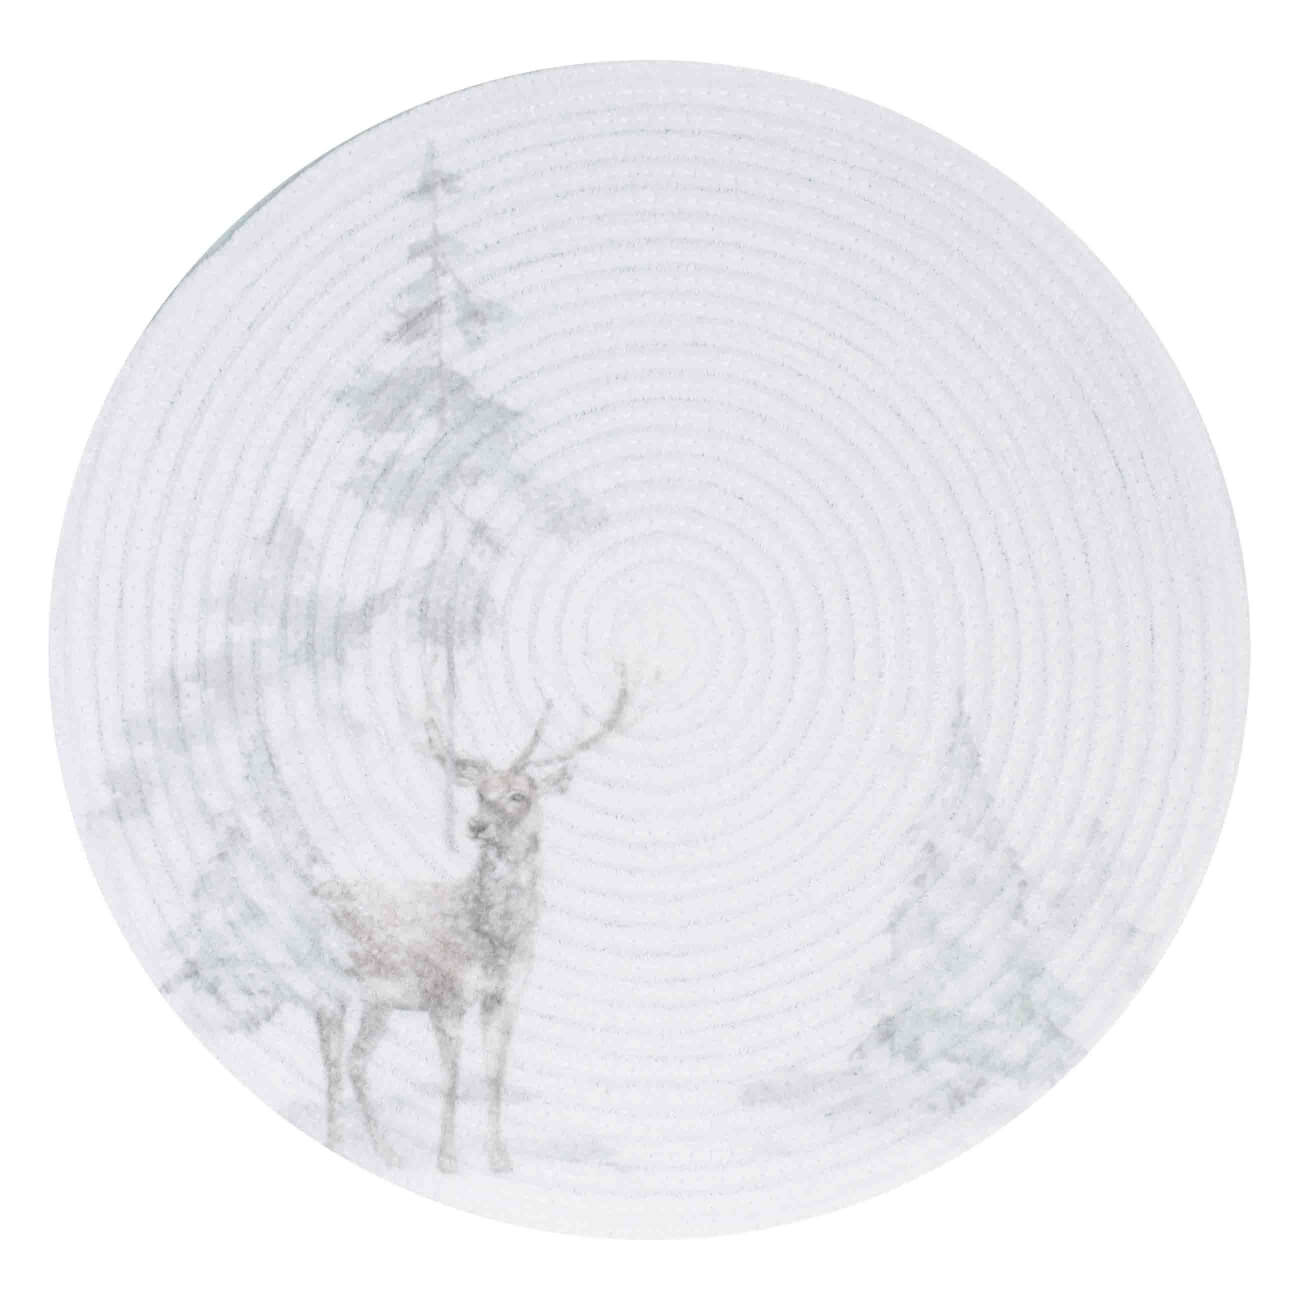 Салфетка под приборы, 38 см, полиэстер, круглая, белая, Олень в снежном лесу, Chenill print